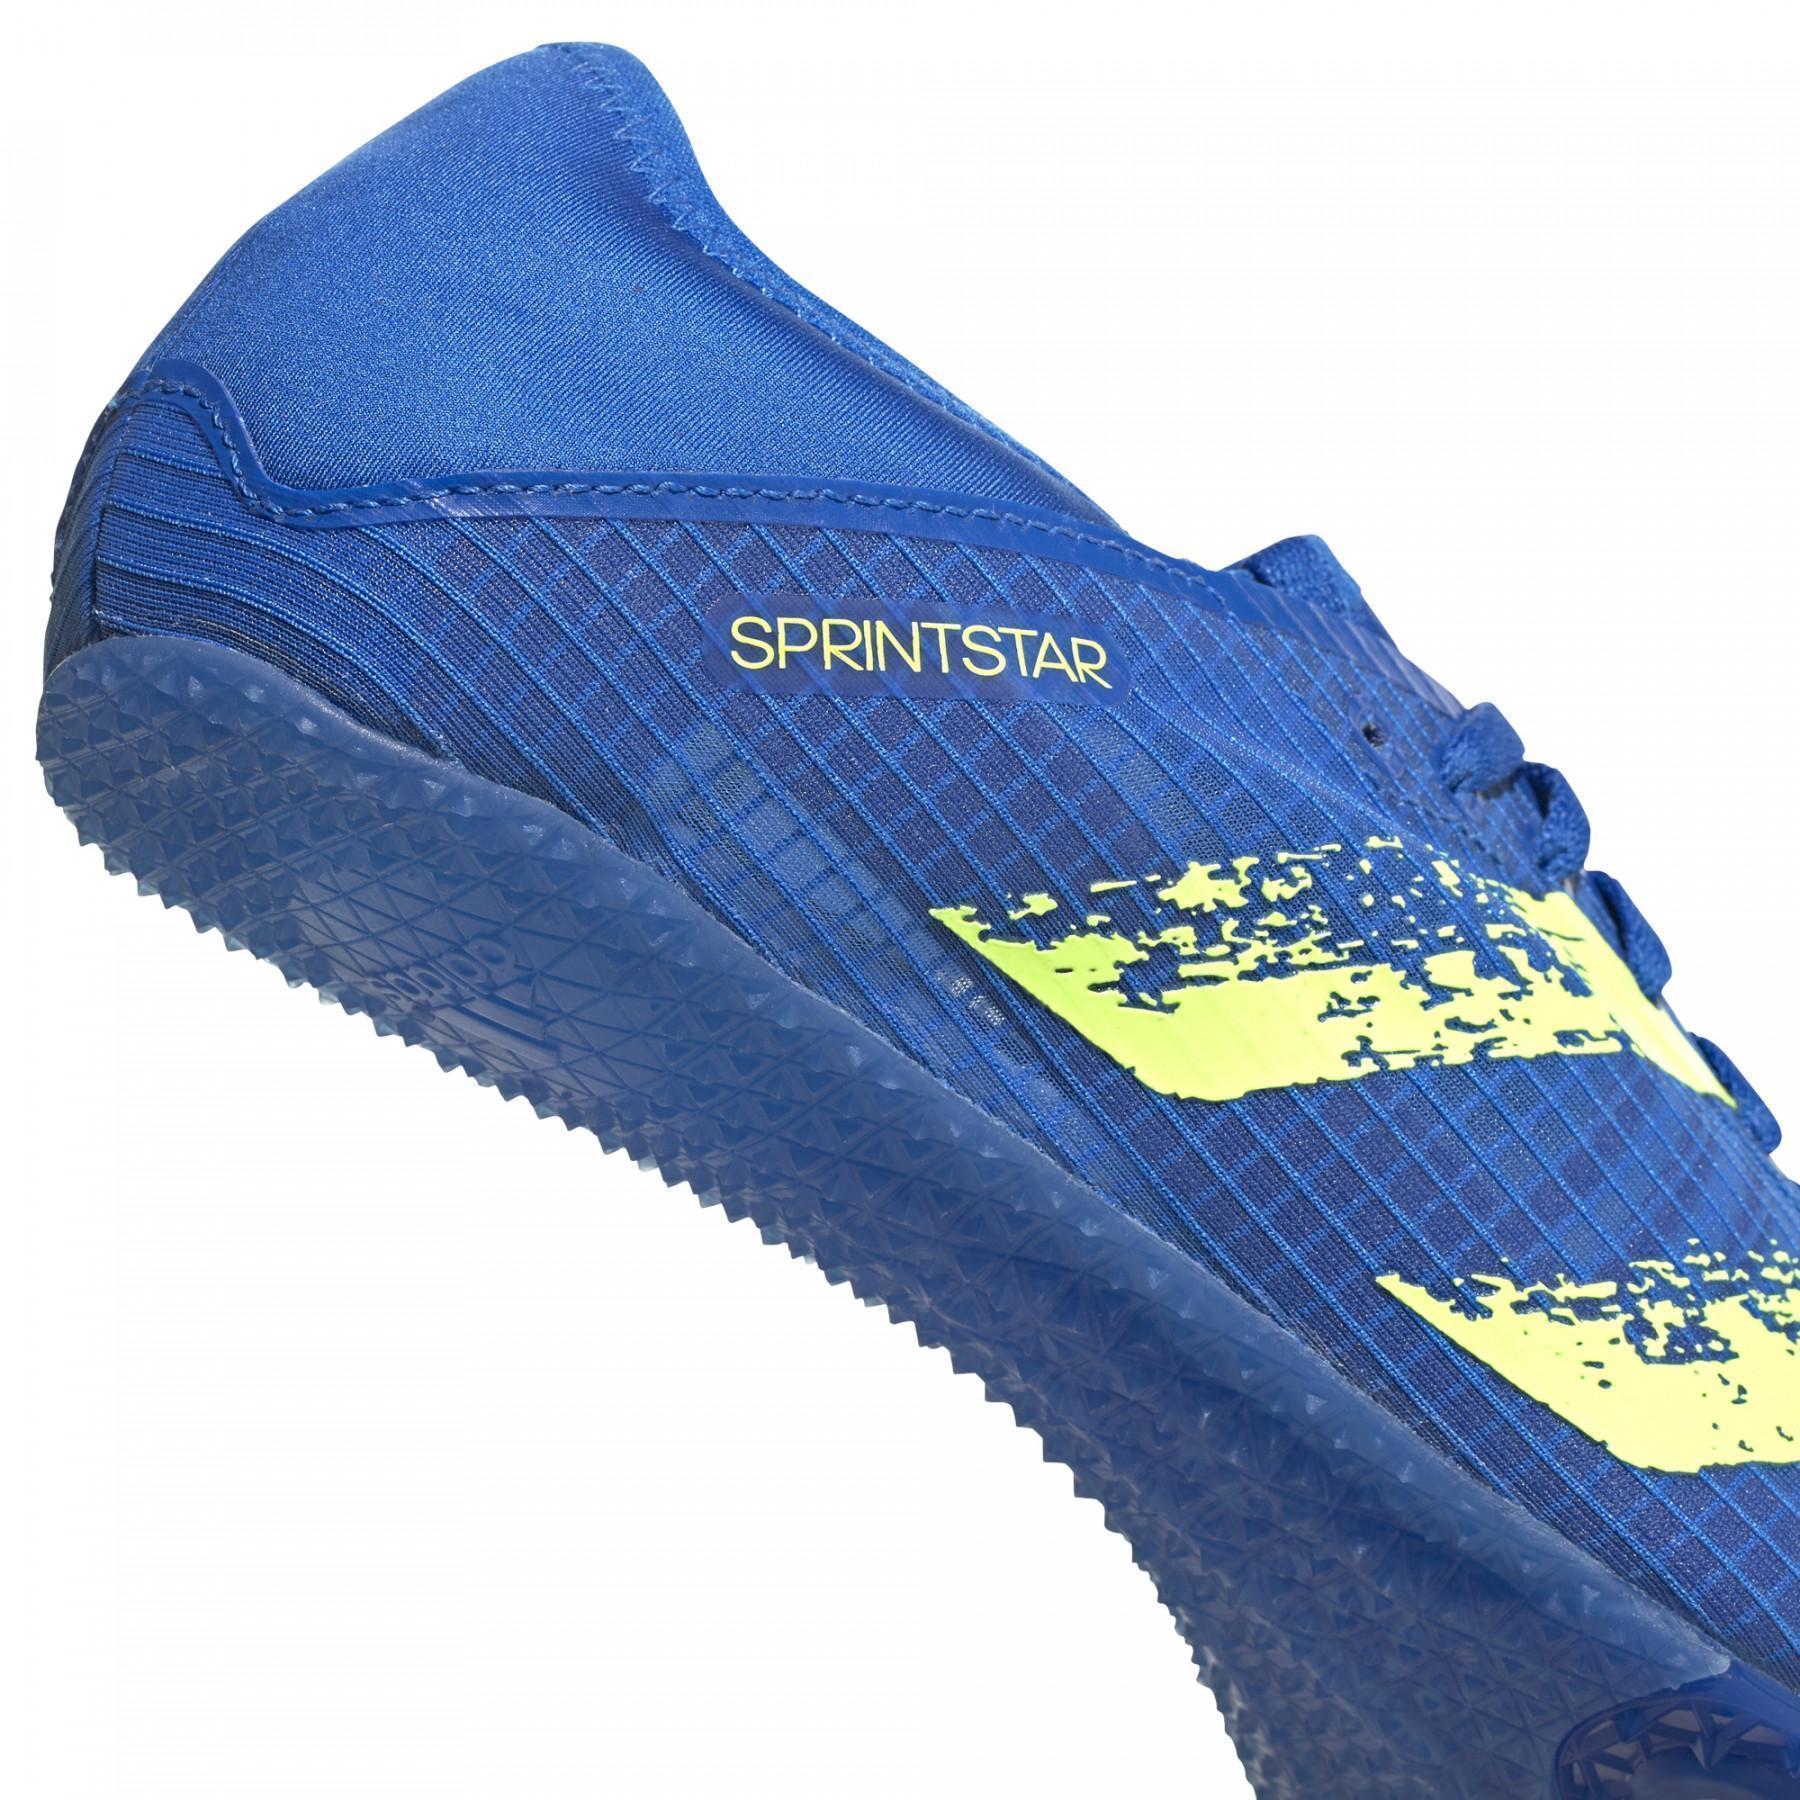 Scarpe adidas Sprintstar Spikes